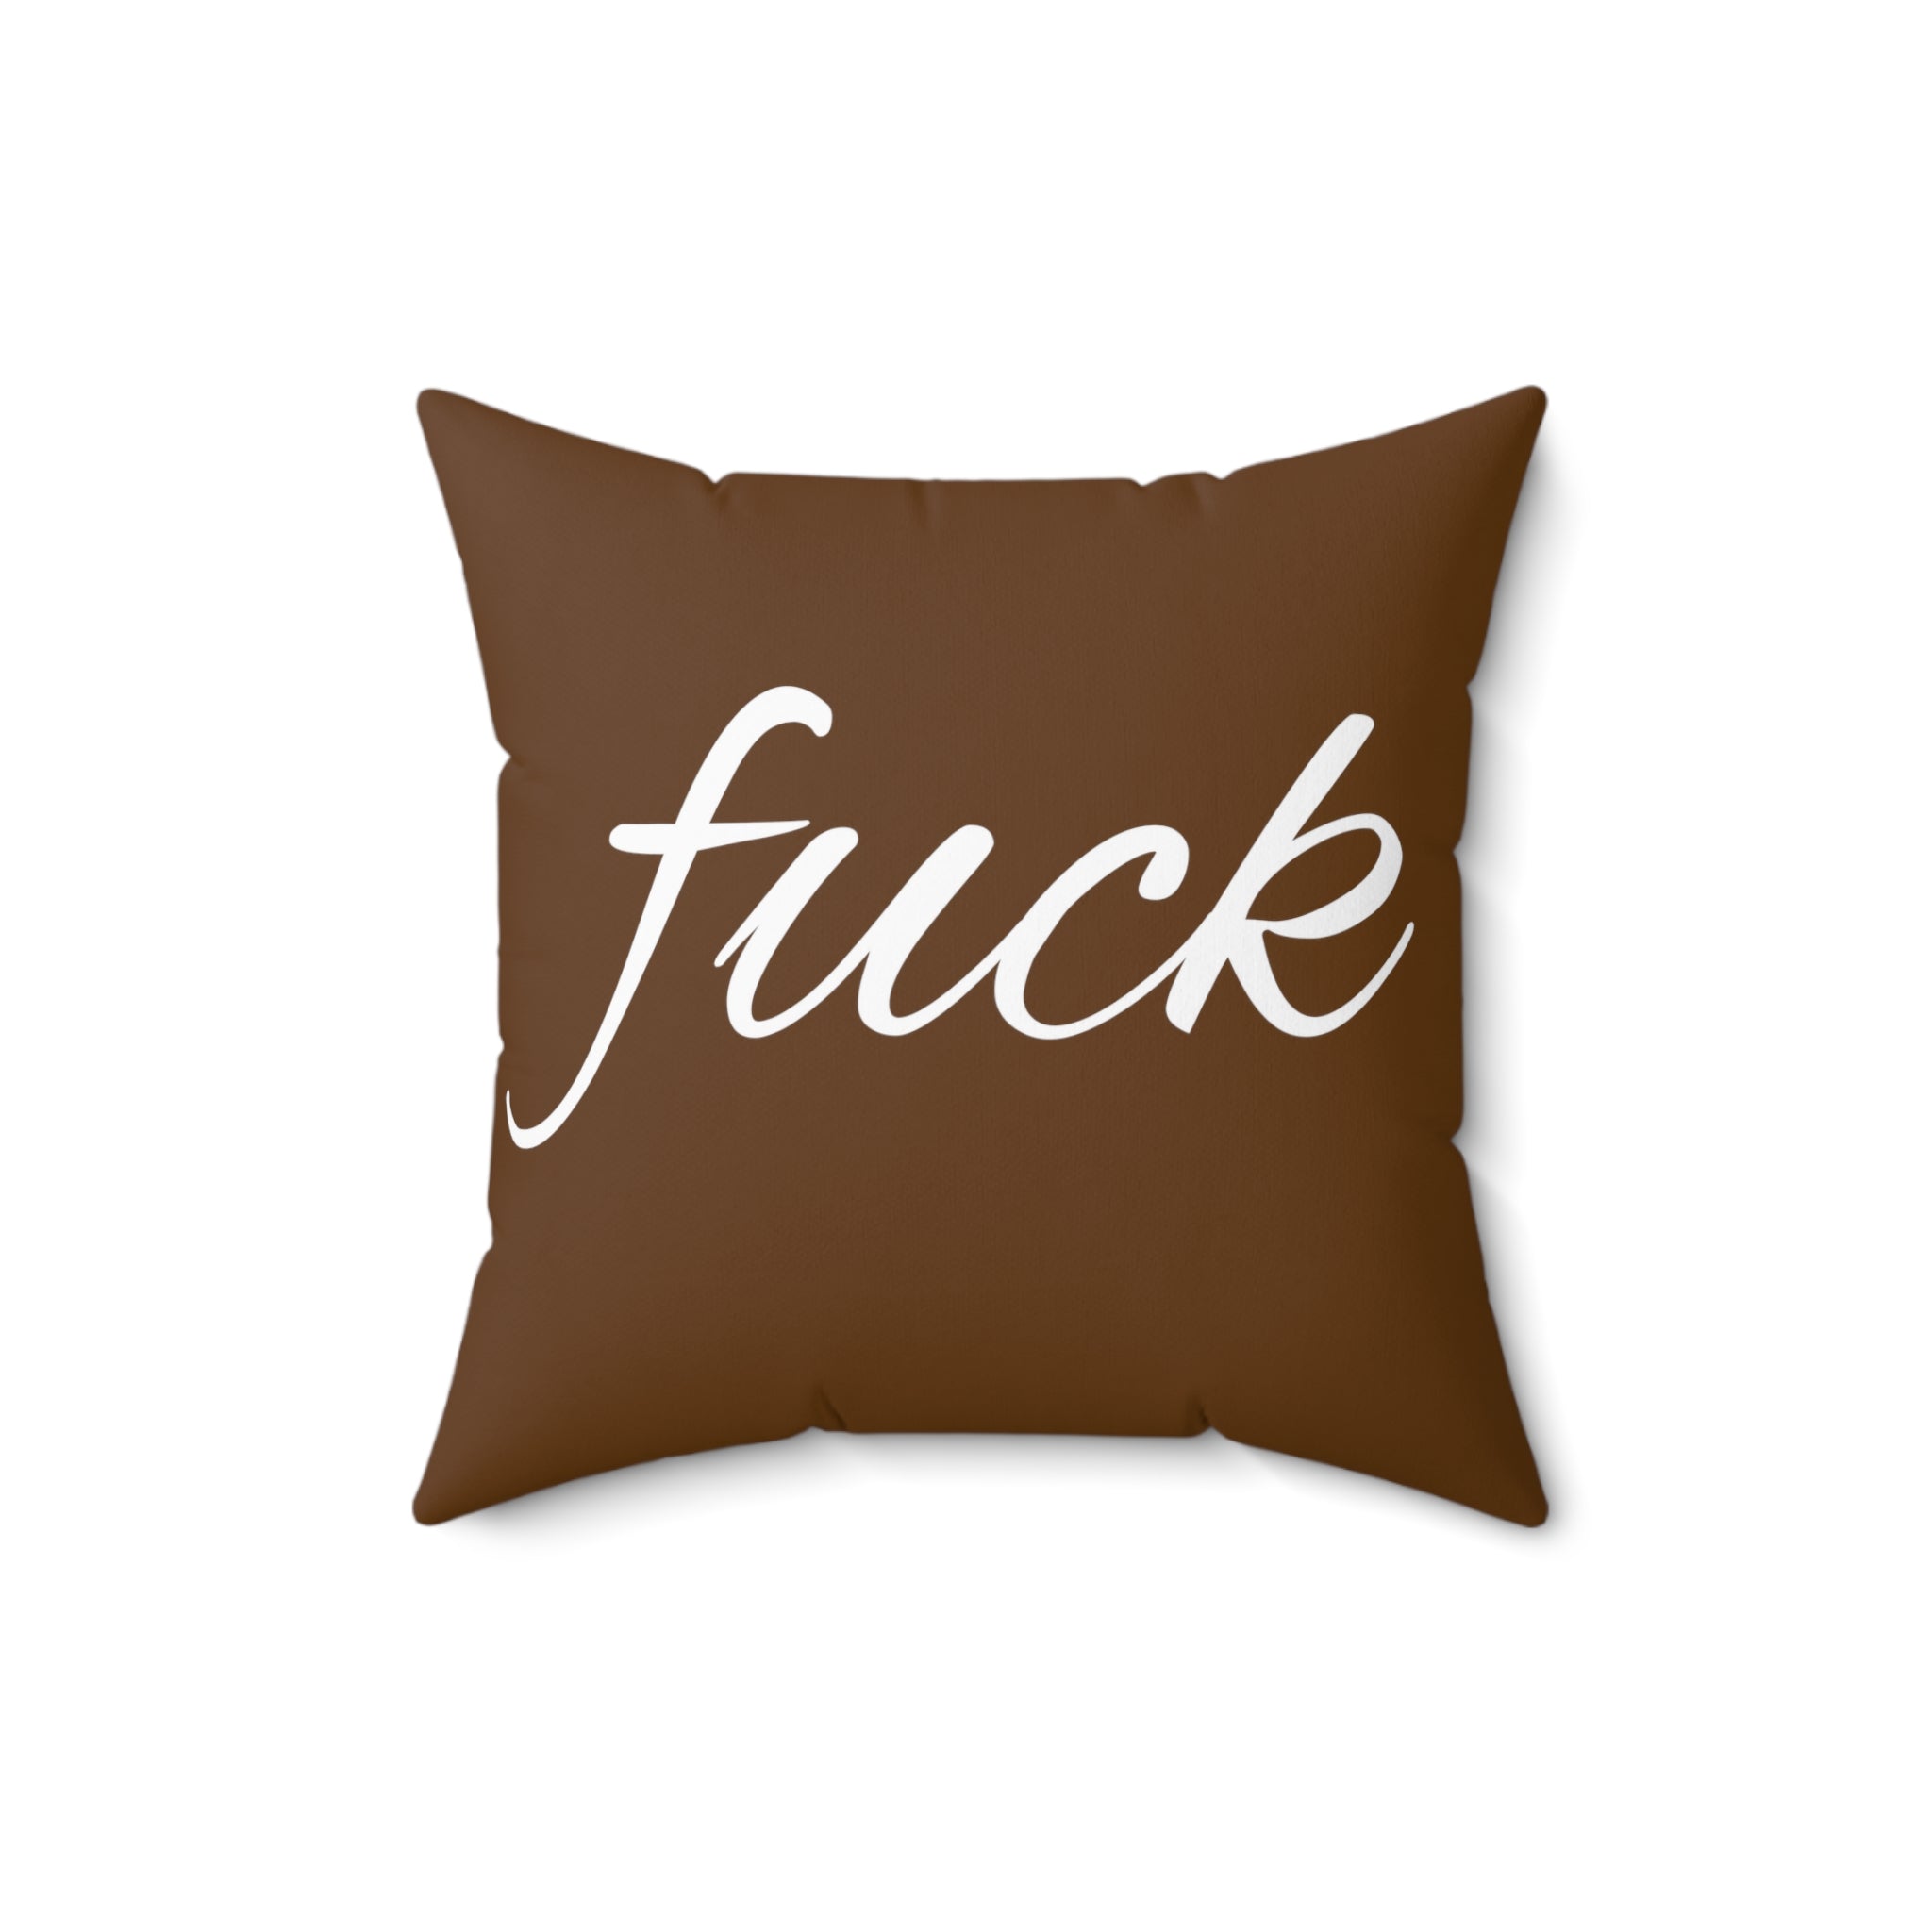  FUCK (Brown) Spun Polyester Square Pillow, Graphic Pillow, Home Decor Home Decor16×16